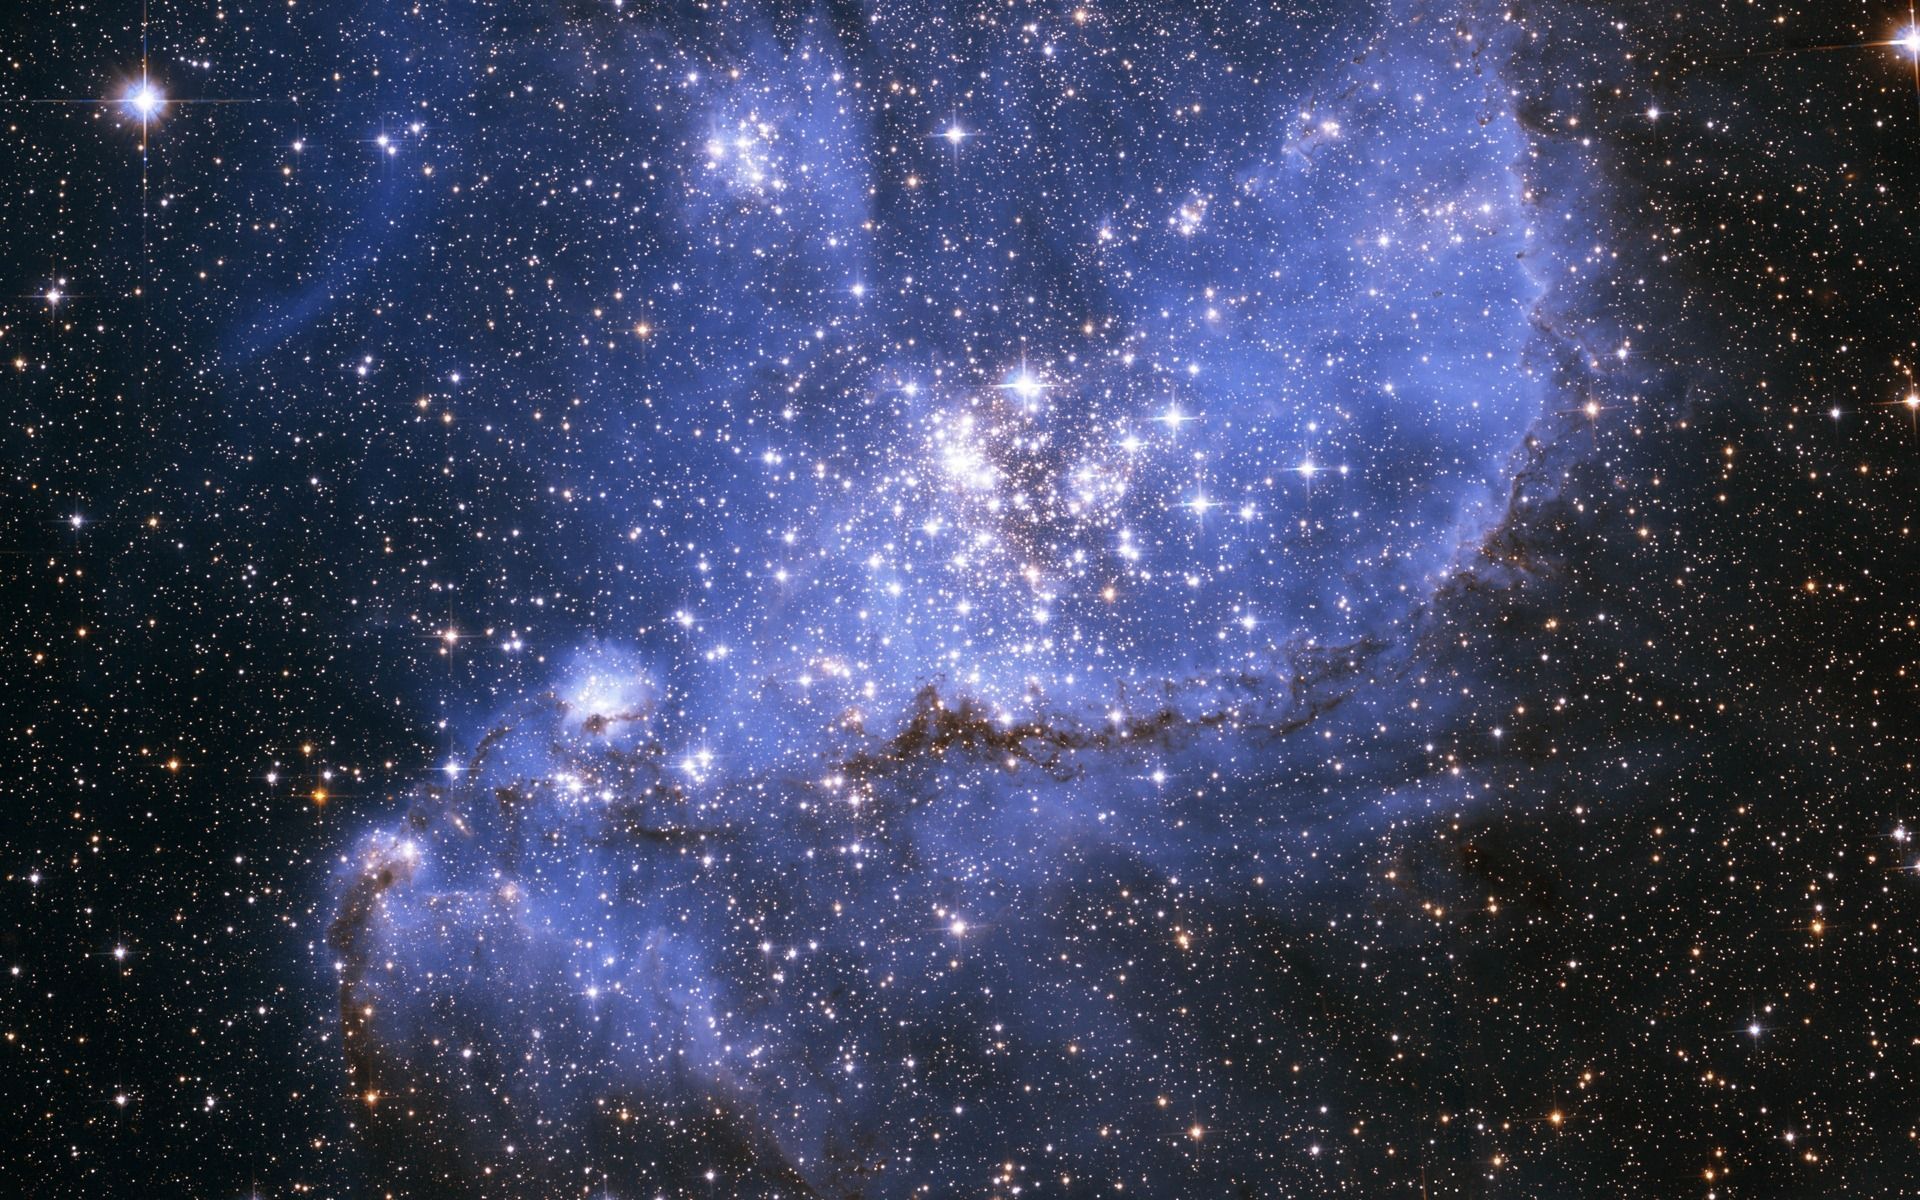 HD Quality Star Galaxy Wallpaper Full Size - SiWallpaper 17750